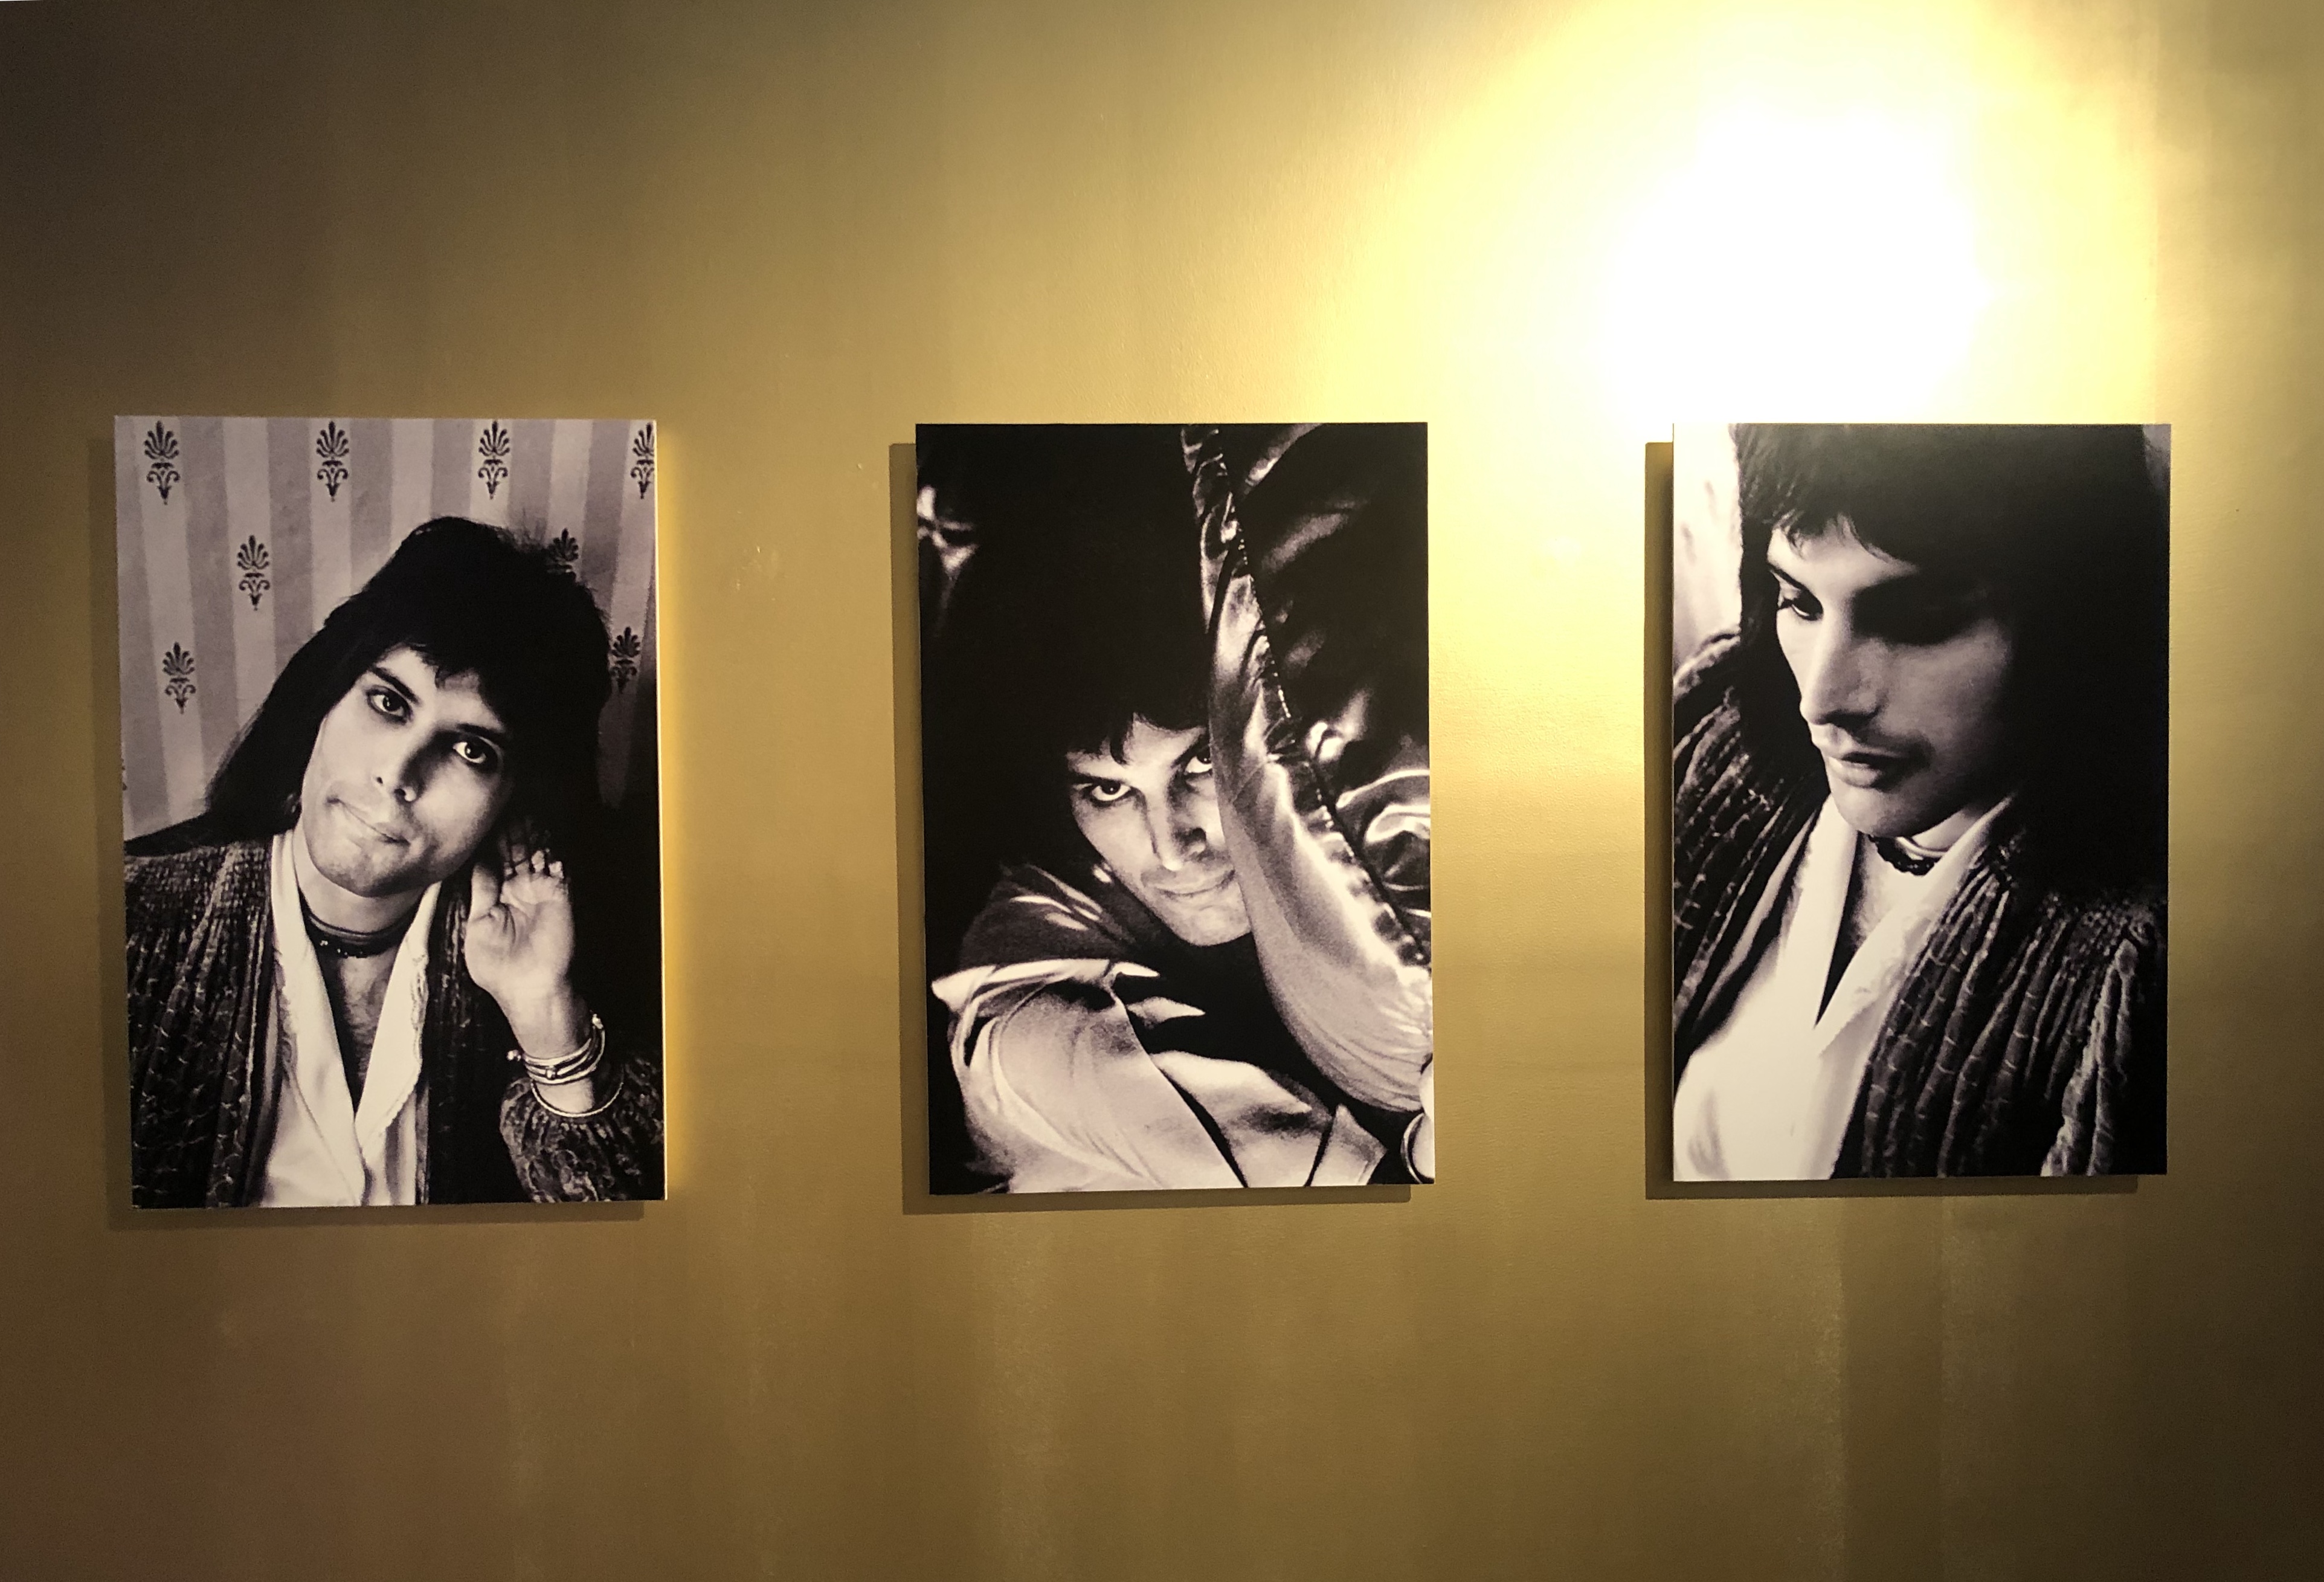 Una nueva expo de Mick Rock se presenta en el Museo de Cuatro Caminos, la cual se titula “Queen: El origen de una leyenda”, que estará hasta abril.